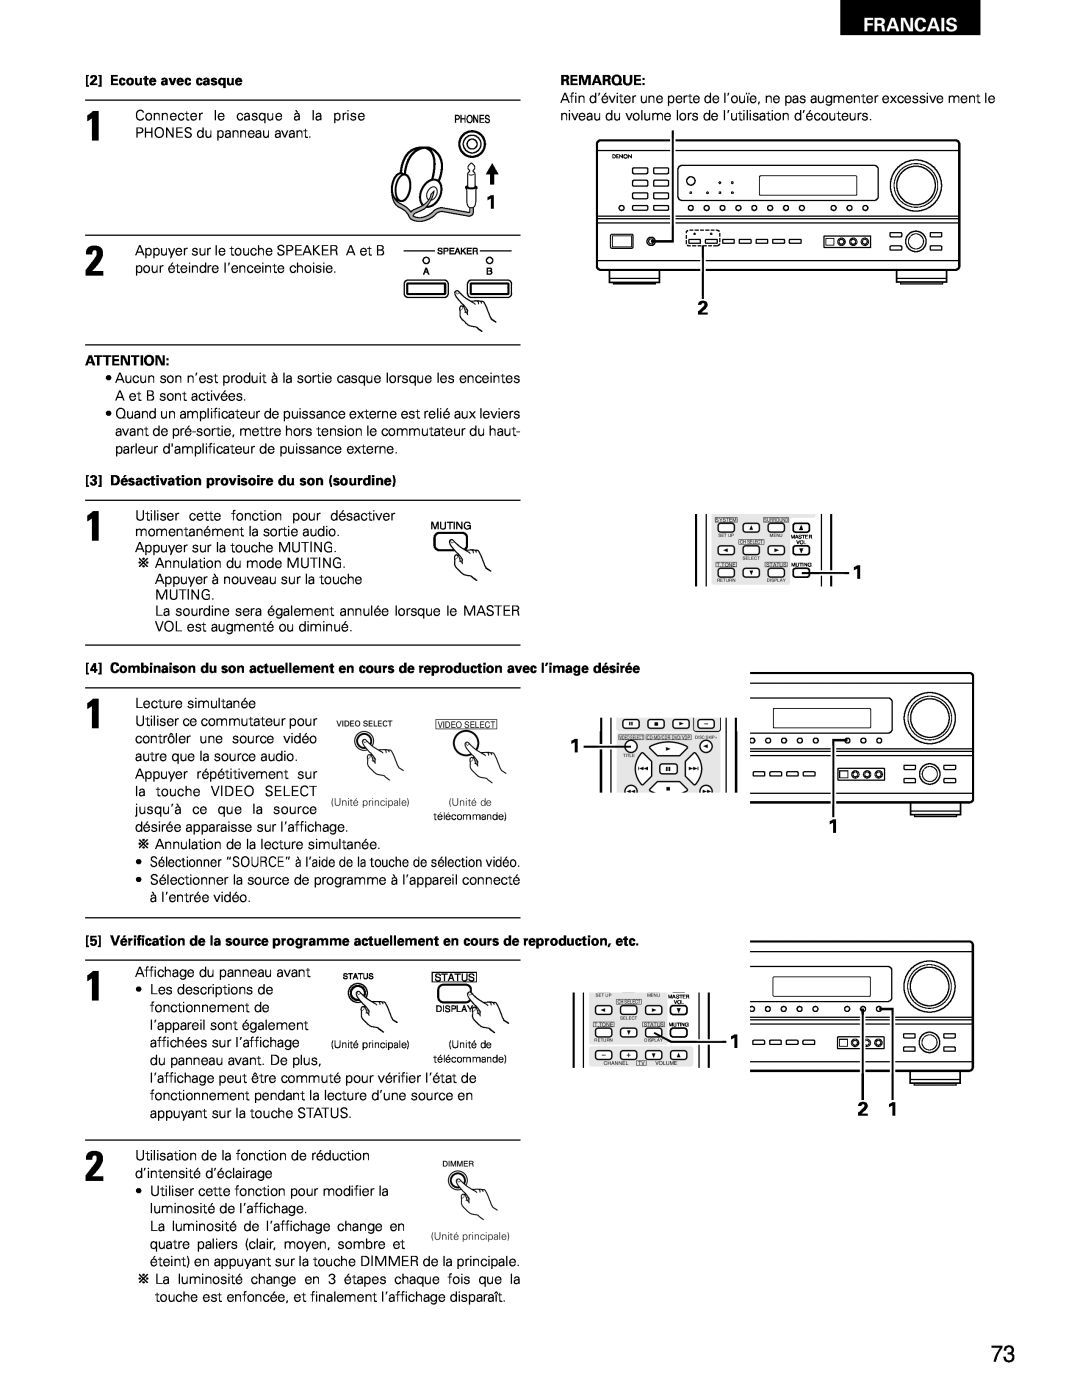 Denon AVR-1802/882 manual Francais, Ecoute avec casque, Remarque, 3Désactivation provisoire du son sourdine 